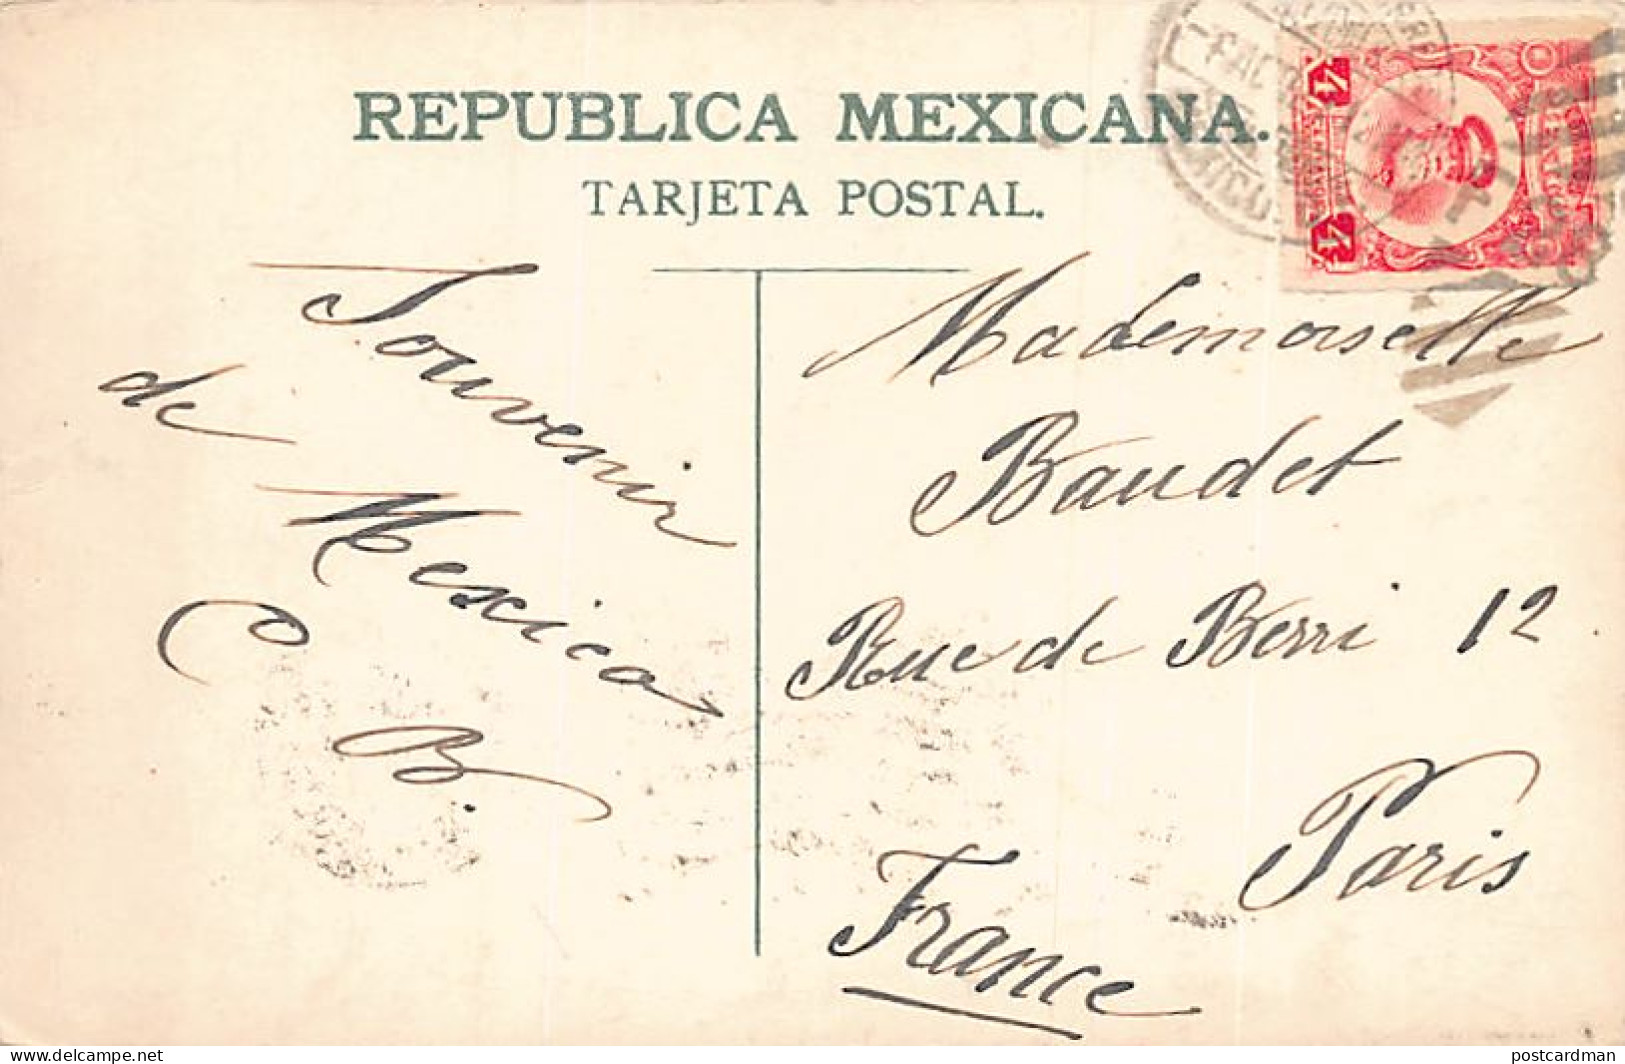 México - Orquesta Mexicana - Ed. J. G. Hatton 8059 - Mexique